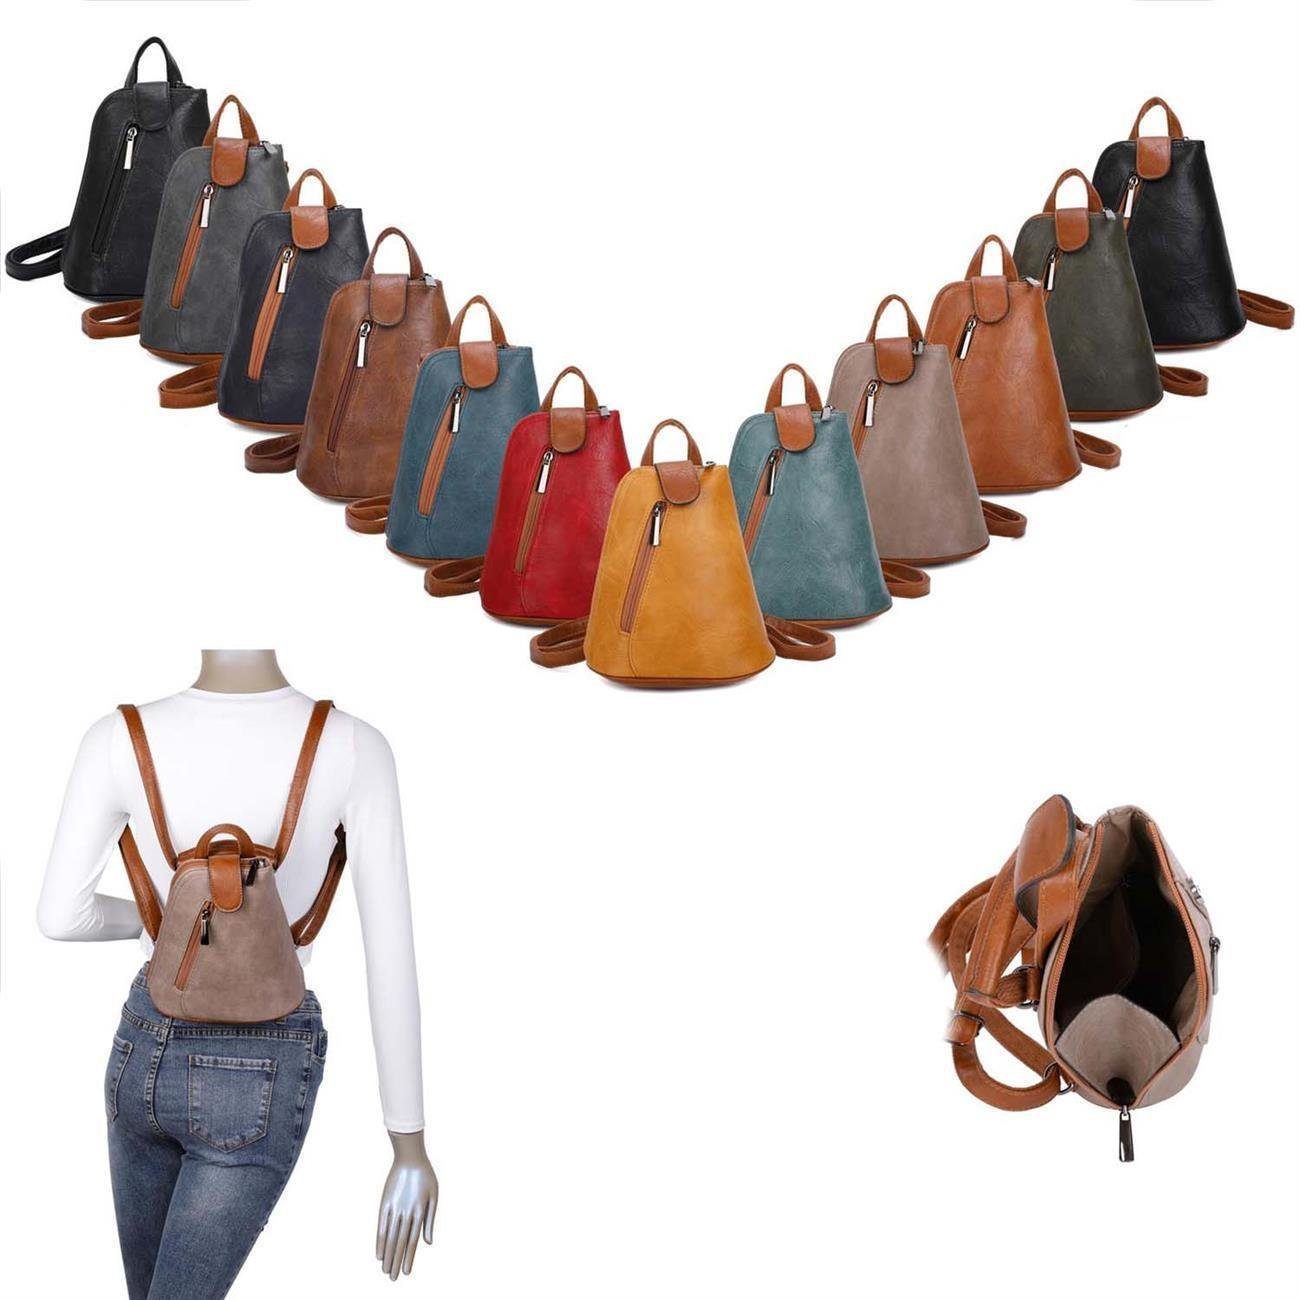 ITALYSHOP24 Rucksack Damen Tasche Crossover, tragbar / Handtasche Rucksack, kleiner Schultertasche Cognac Umhängetasche